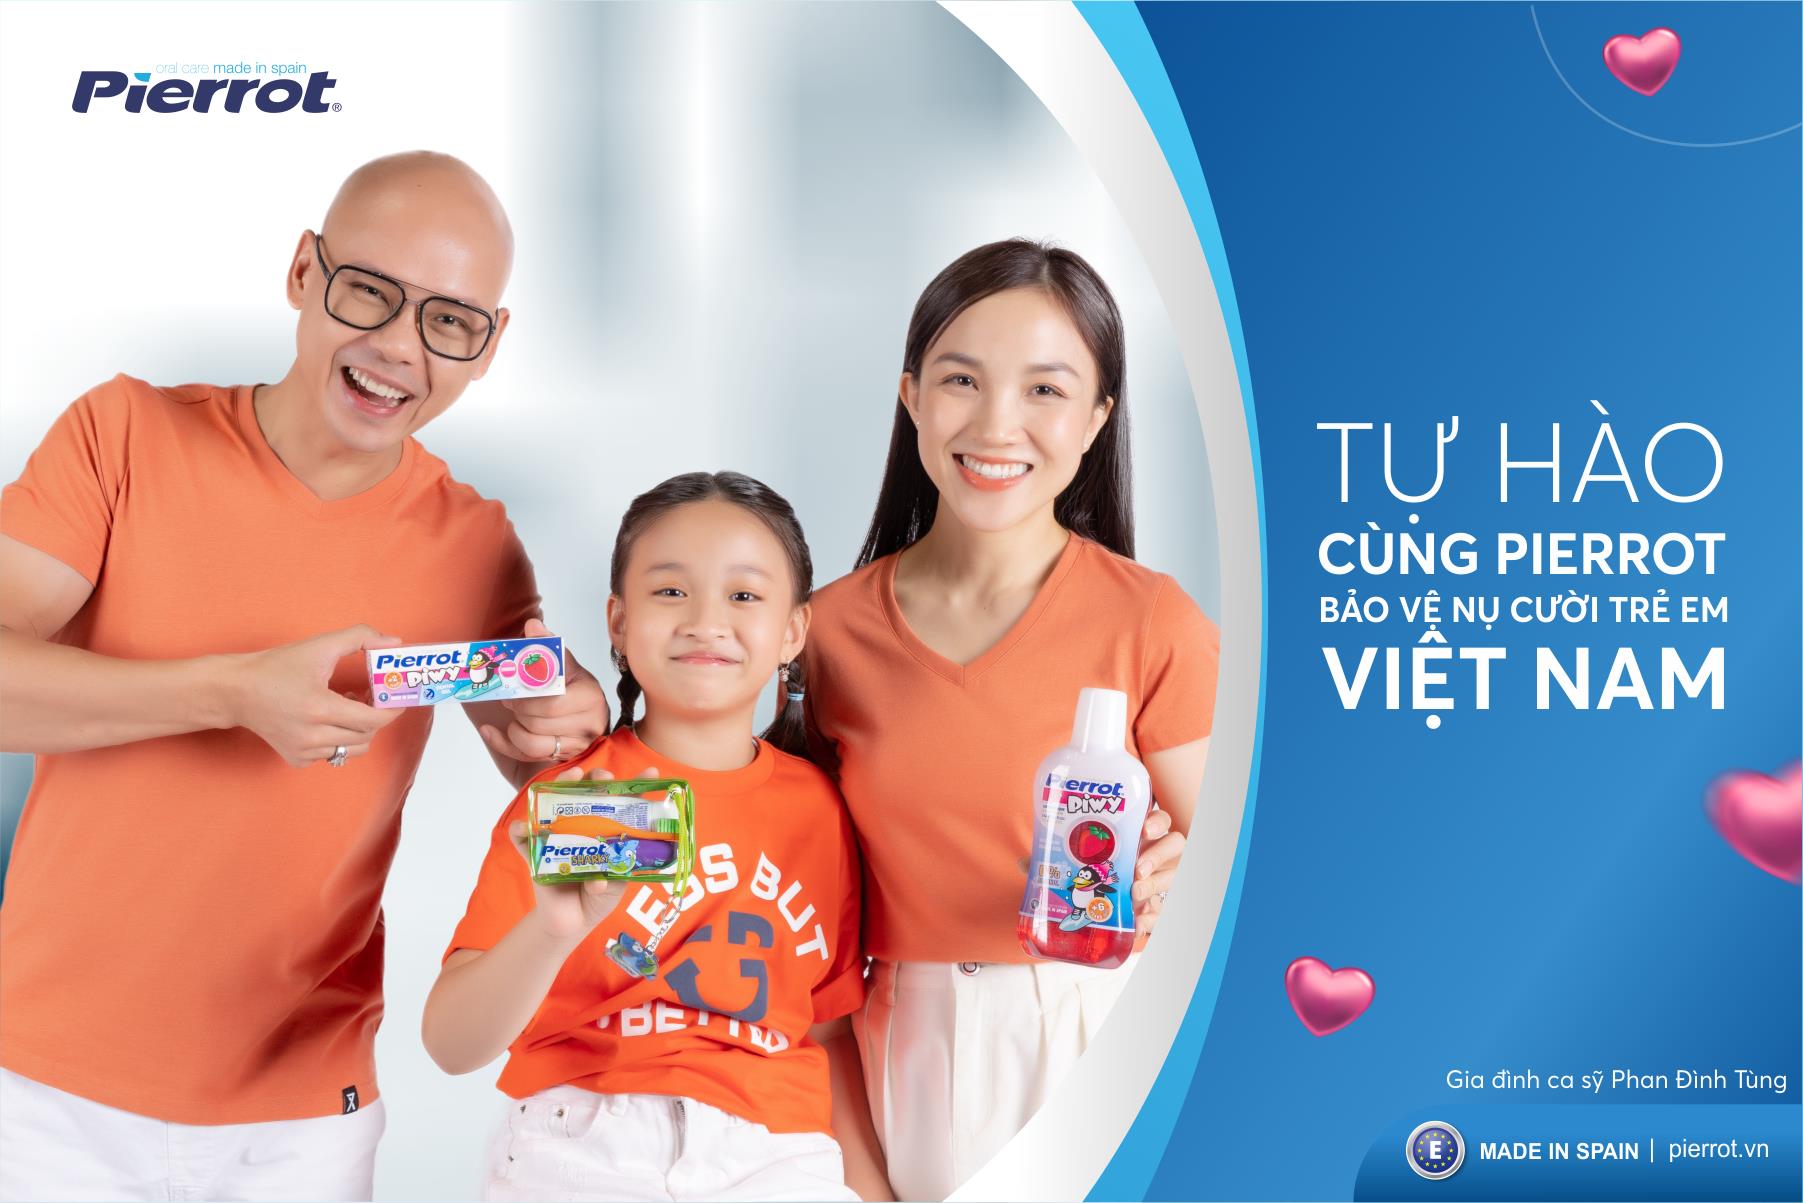 Ca sĩ Phan Đinh Tùng đồng hành cùng Pierrot bảo vệ nụ cười trẻ em Việt Nam - Ảnh 1.